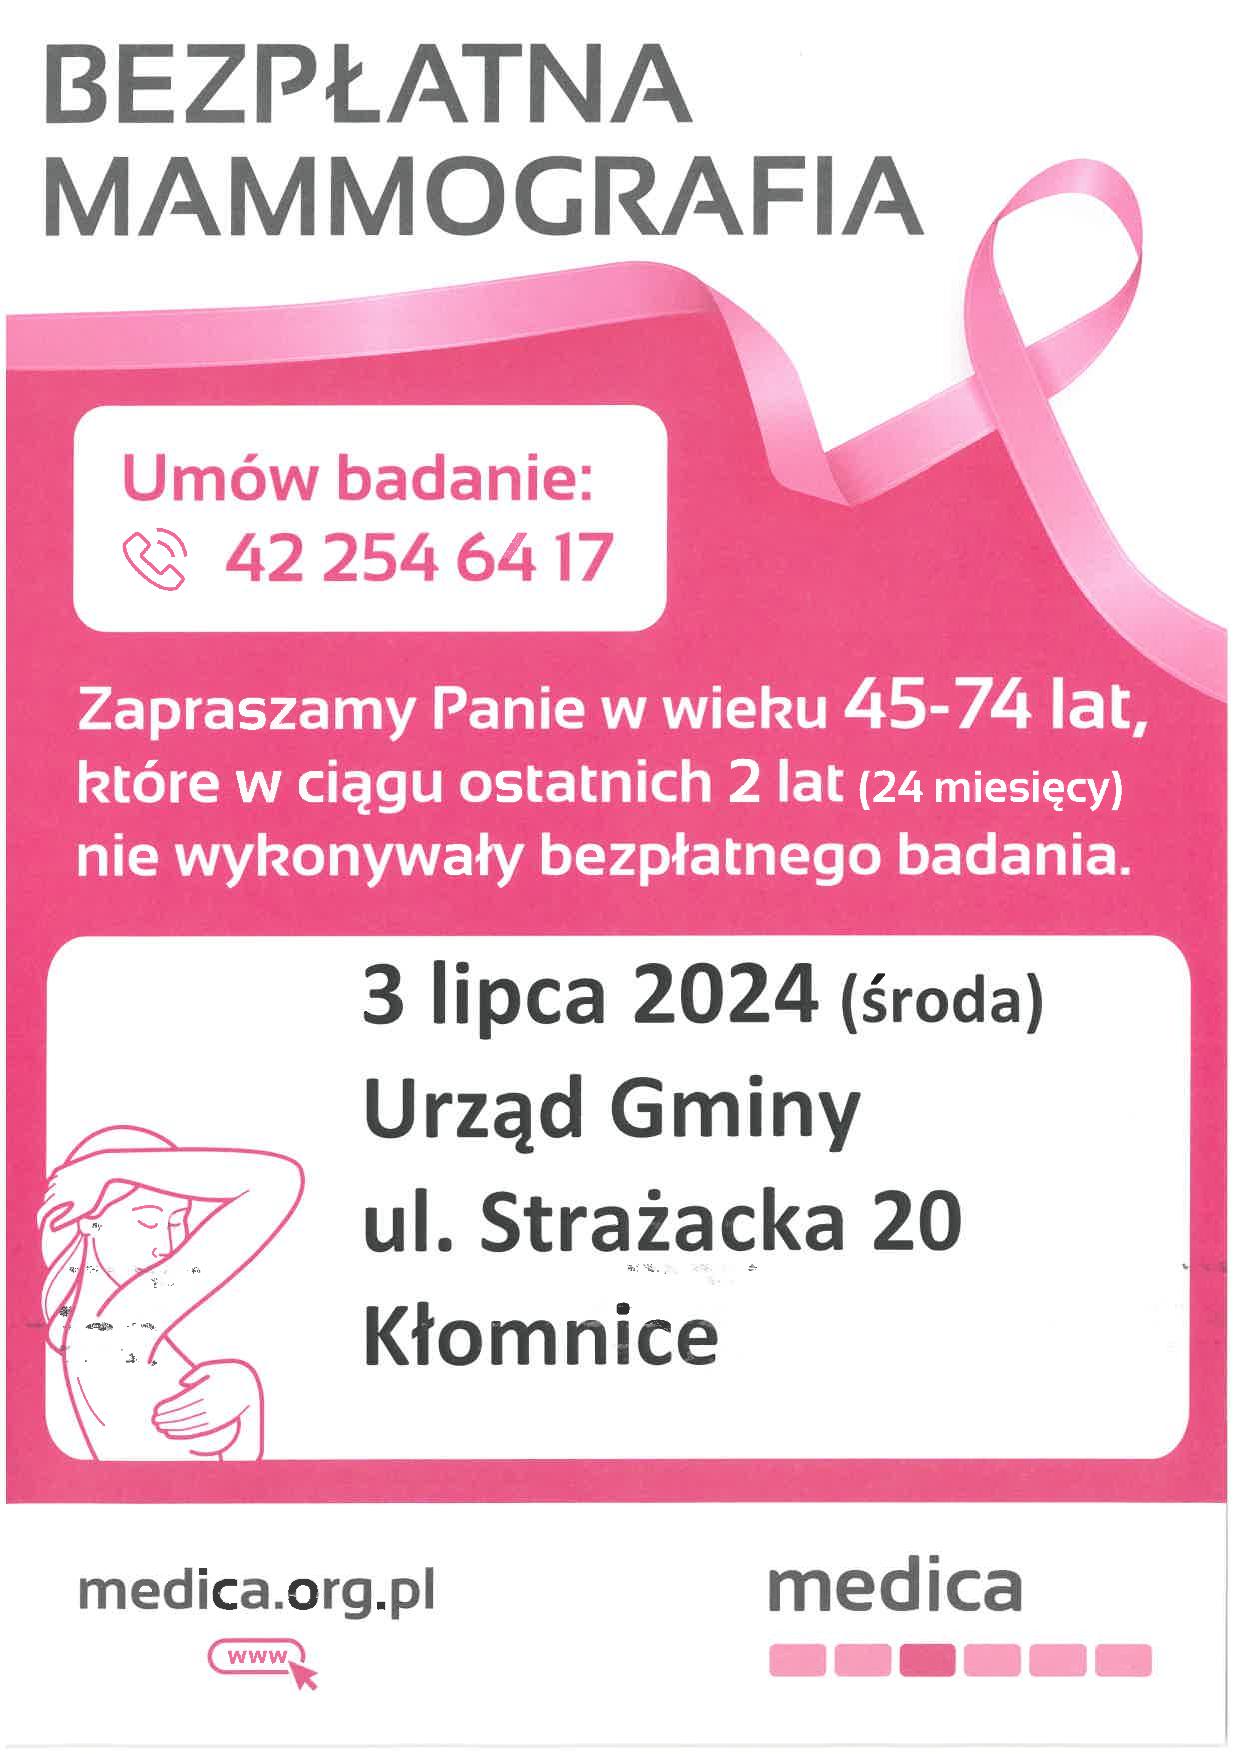 Bezpłatnia mammografia, umawianie badania: 422546417, Termin: 3.07.2024 Urząd Gminy ul. Strażacka 20